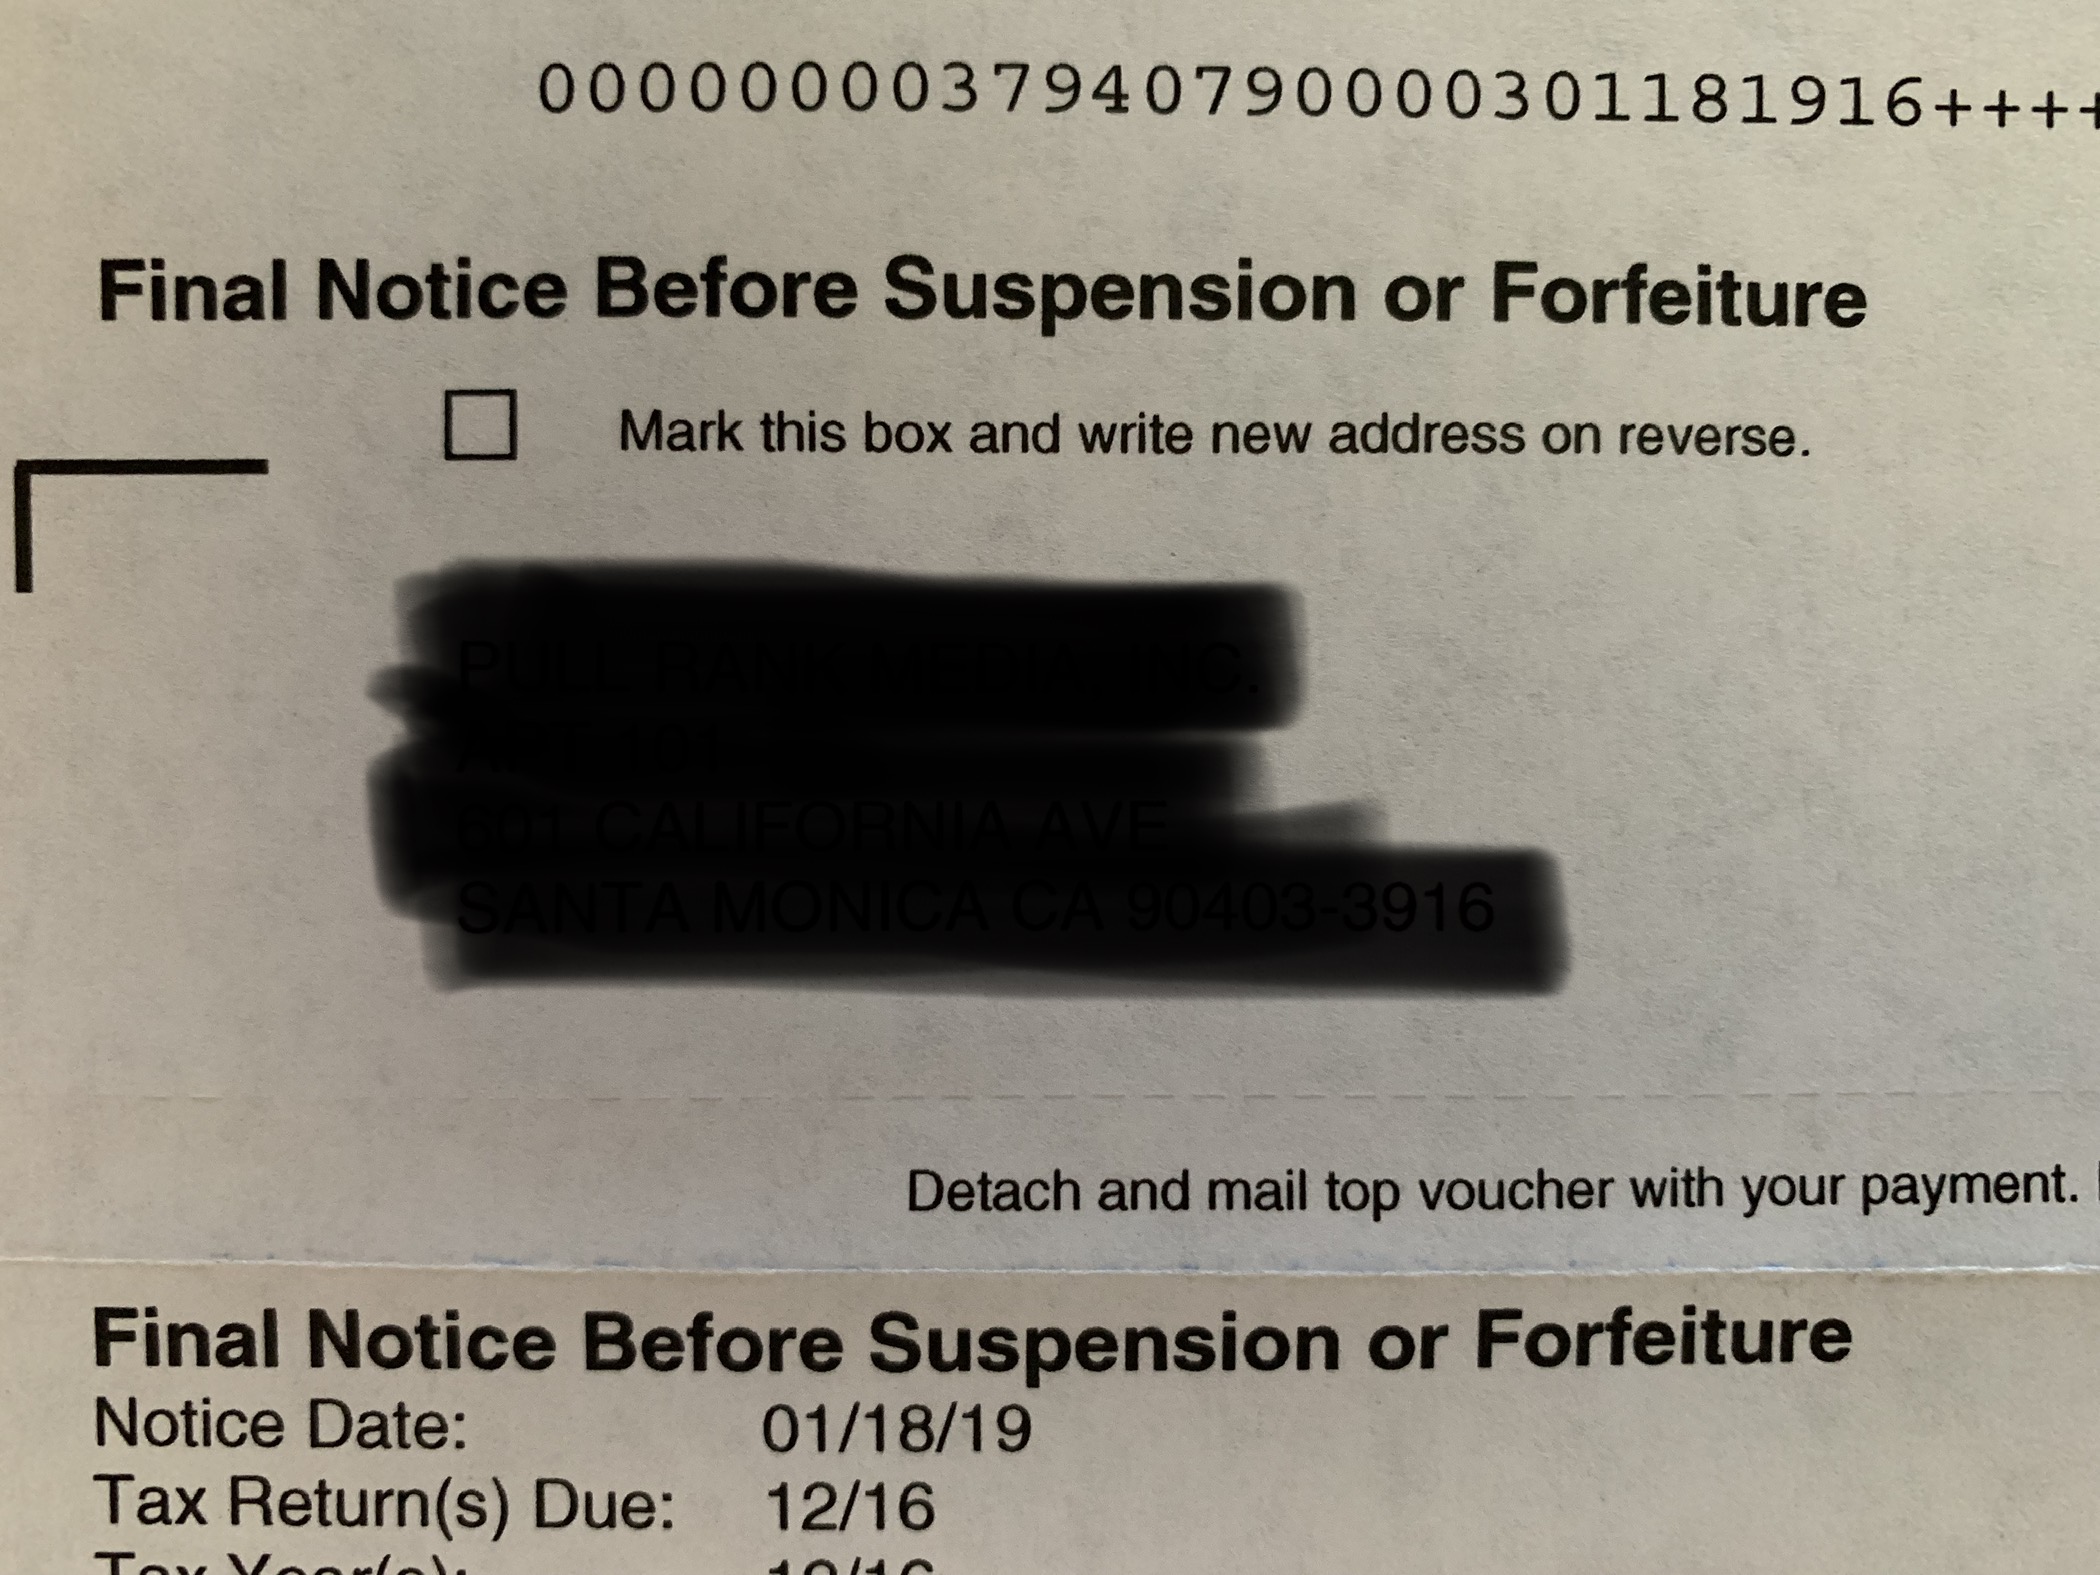 IRS Notice of Suspension